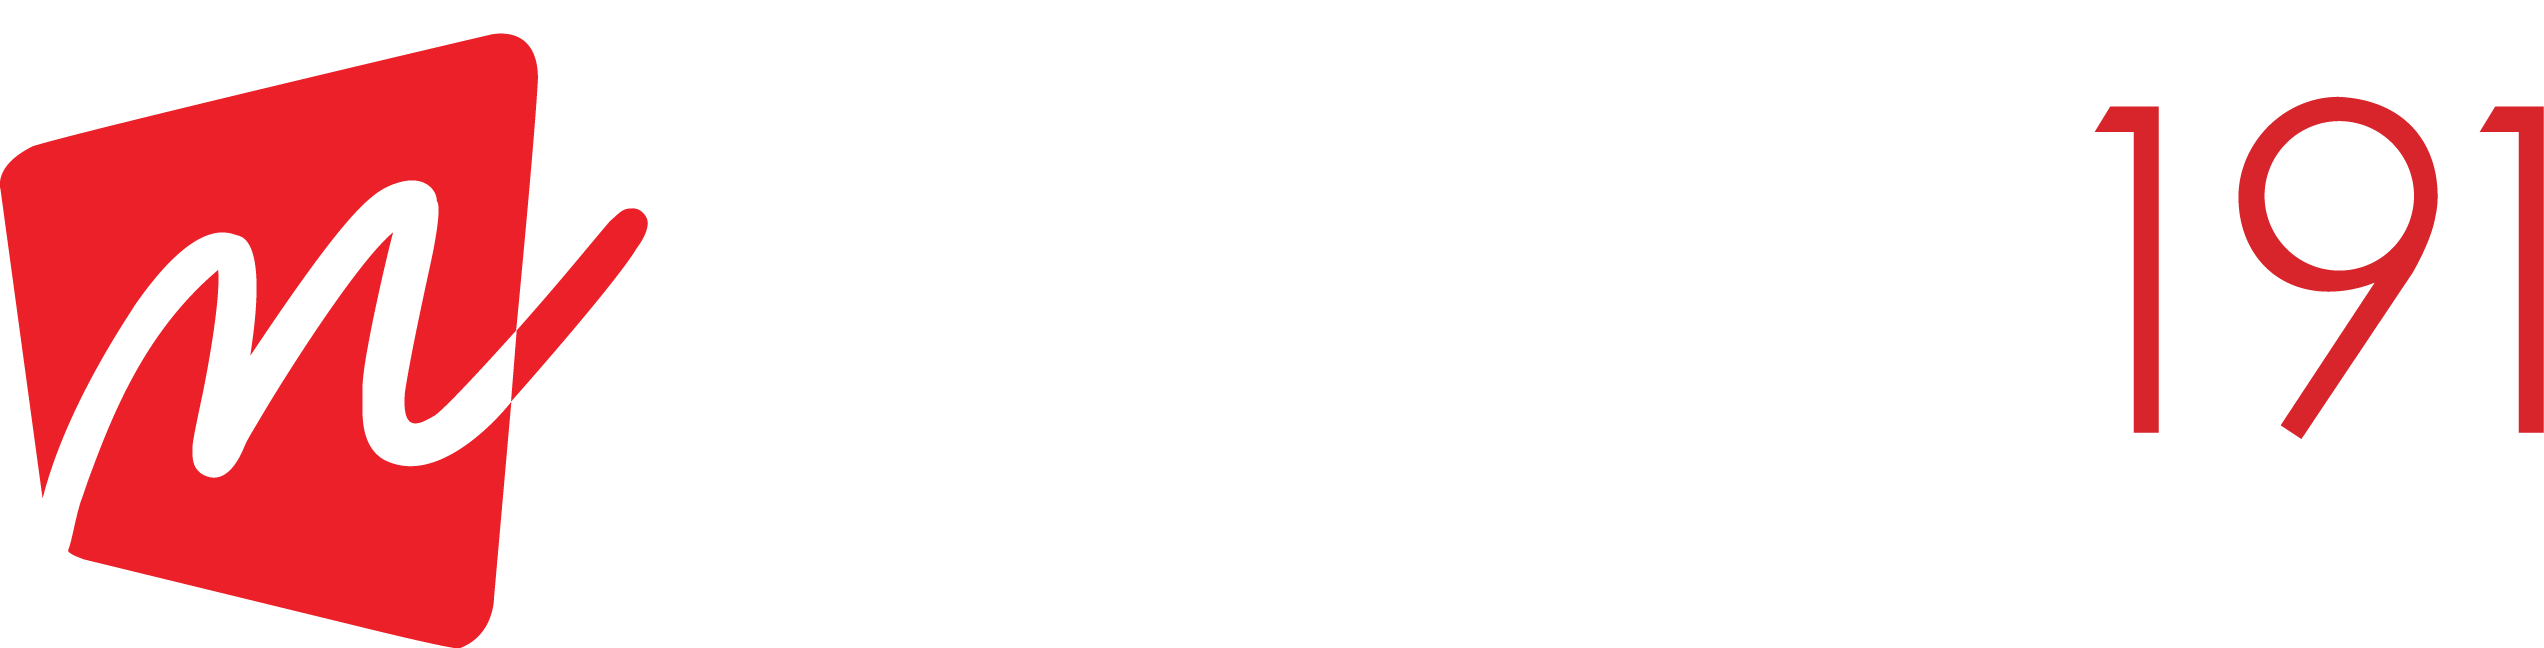 M Summit 191 Executive Hotel Suites